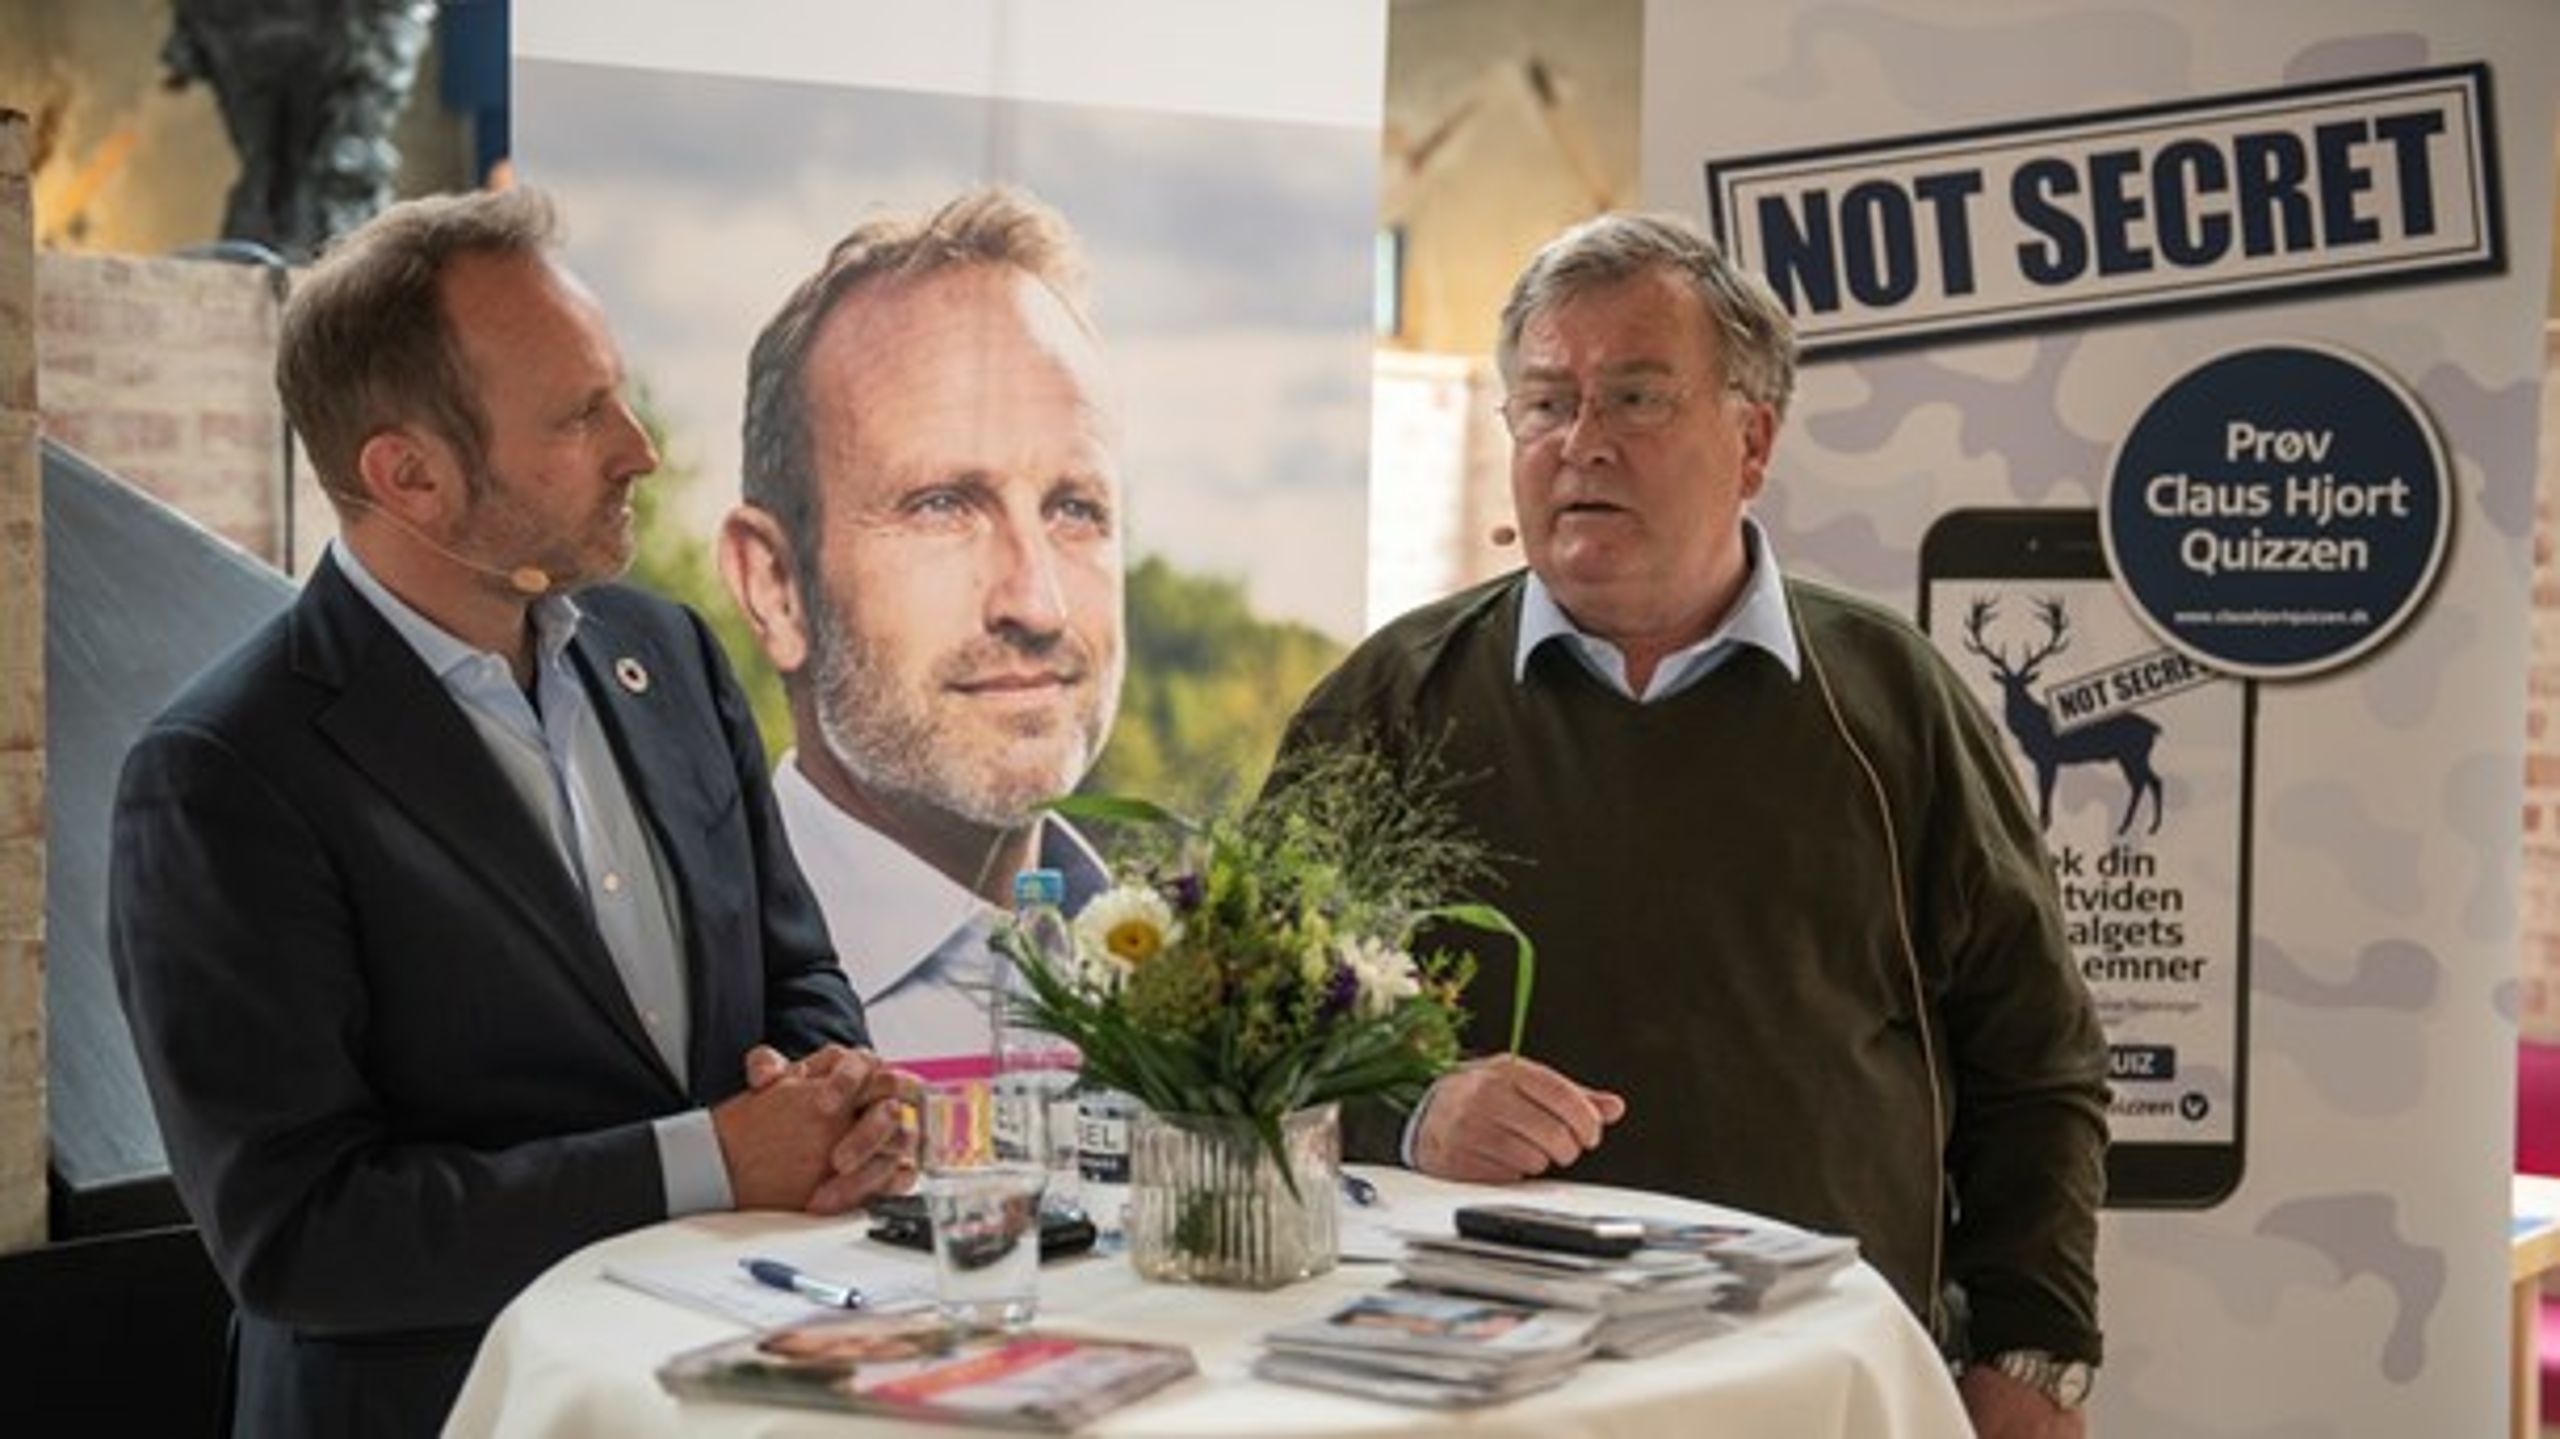 Martin Lidegaard (R) og Claus Hjort Frederiksen (V) debatterede onsdag hos Weibel i Allerød.